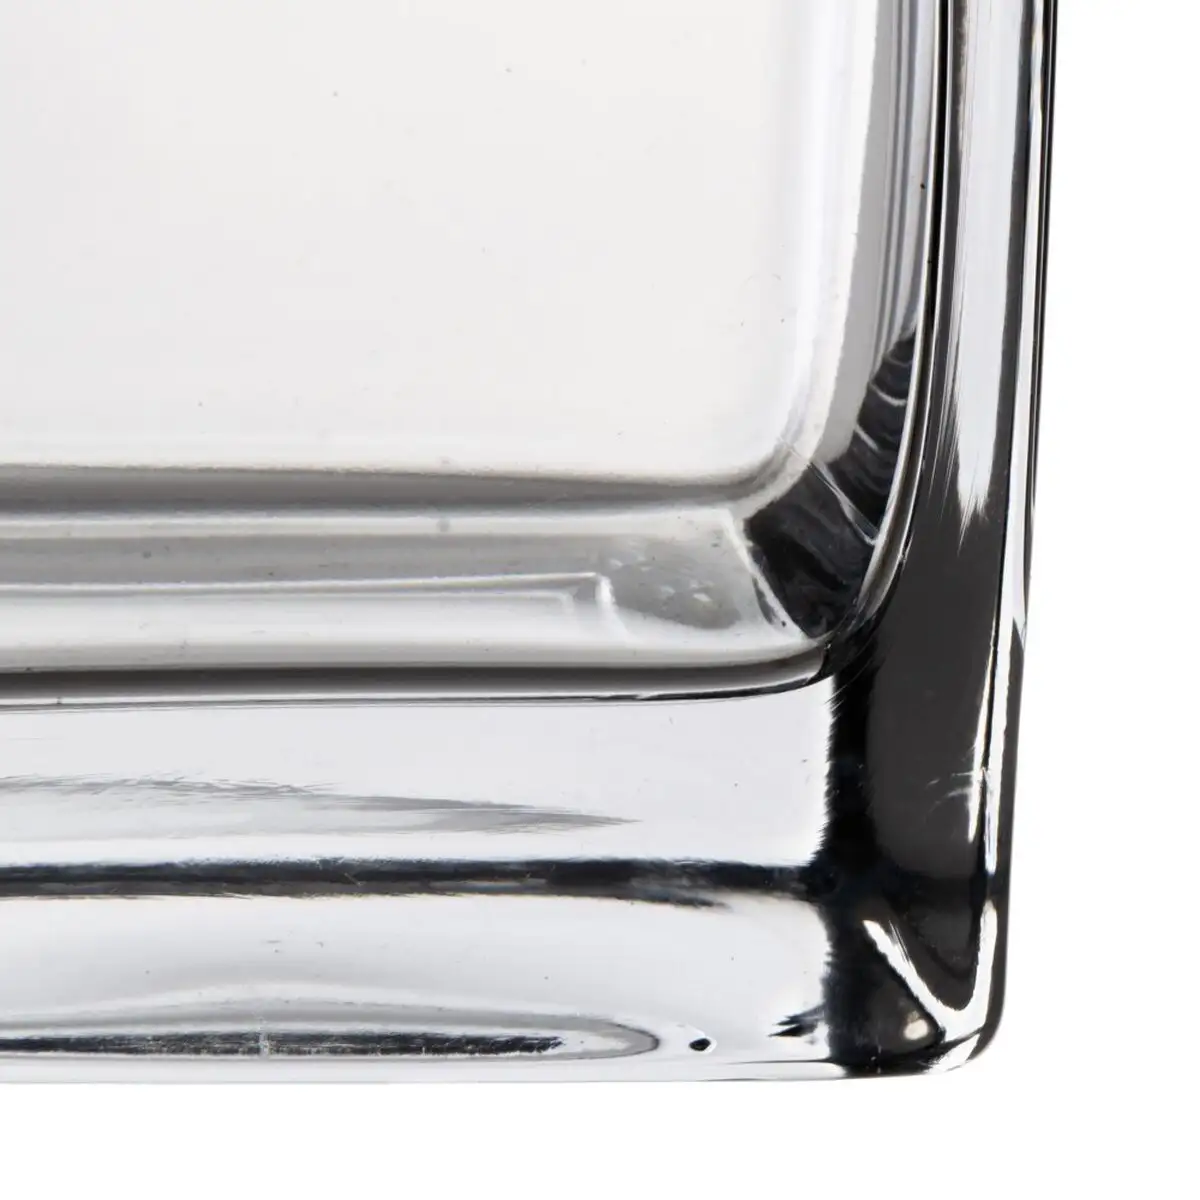 Vase cristal transparent 10 x 10 x 20 cm_7972. DIAYTAR SENEGAL - Votre Destination Shopping de Choix. Explorez notre boutique en ligne et découvrez des trésors qui reflètent votre style et votre passion pour l'authenticité.